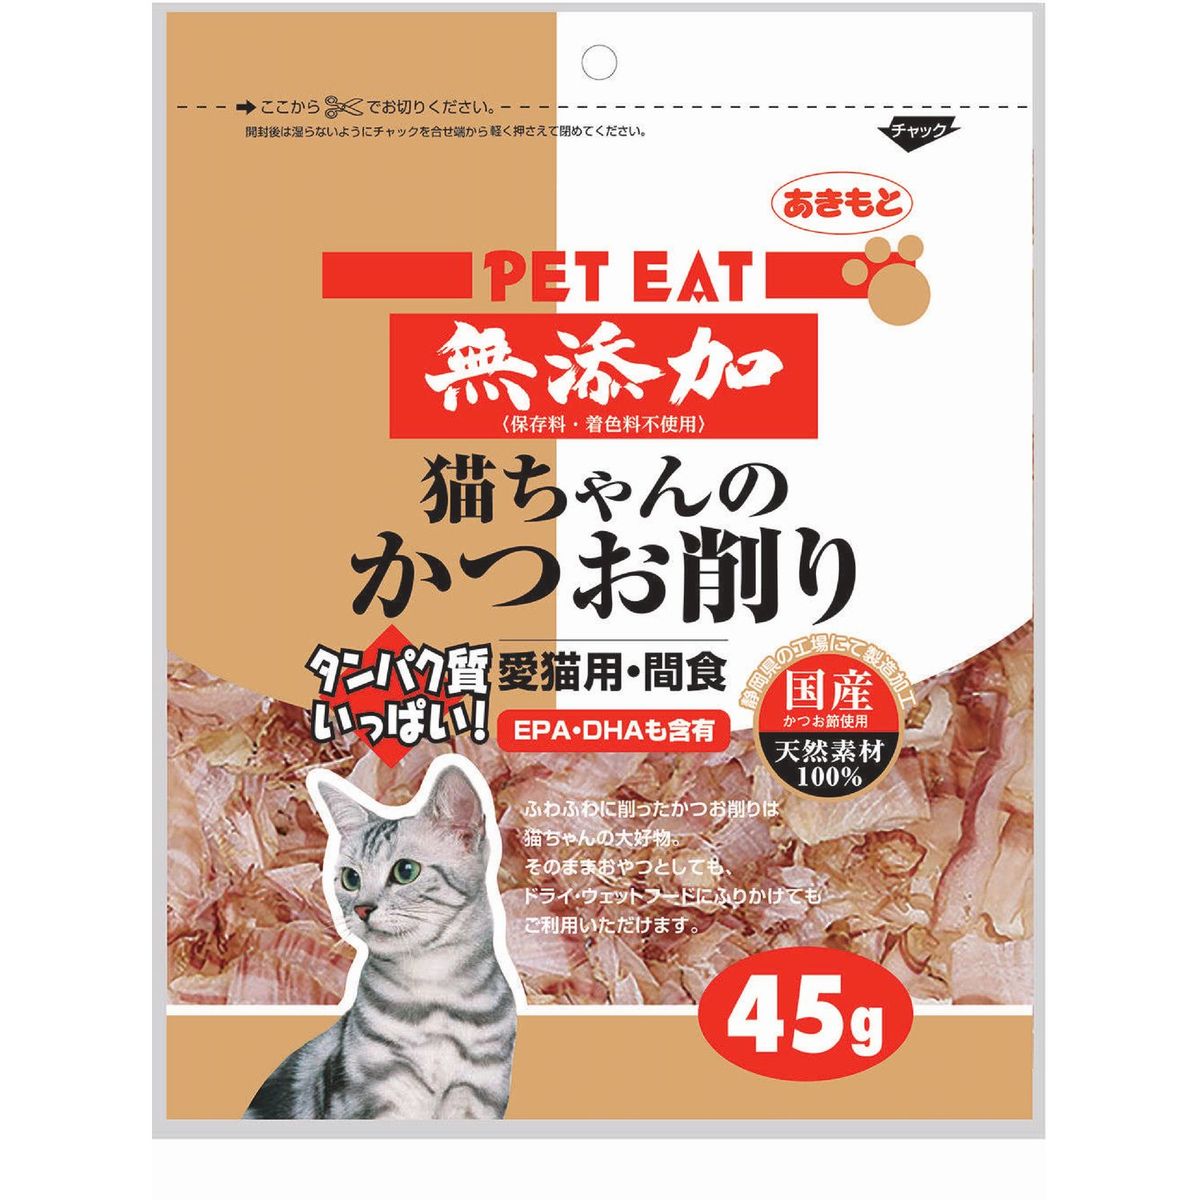 ペットイート無添加猫チャンノカツオ削リ 45g×48